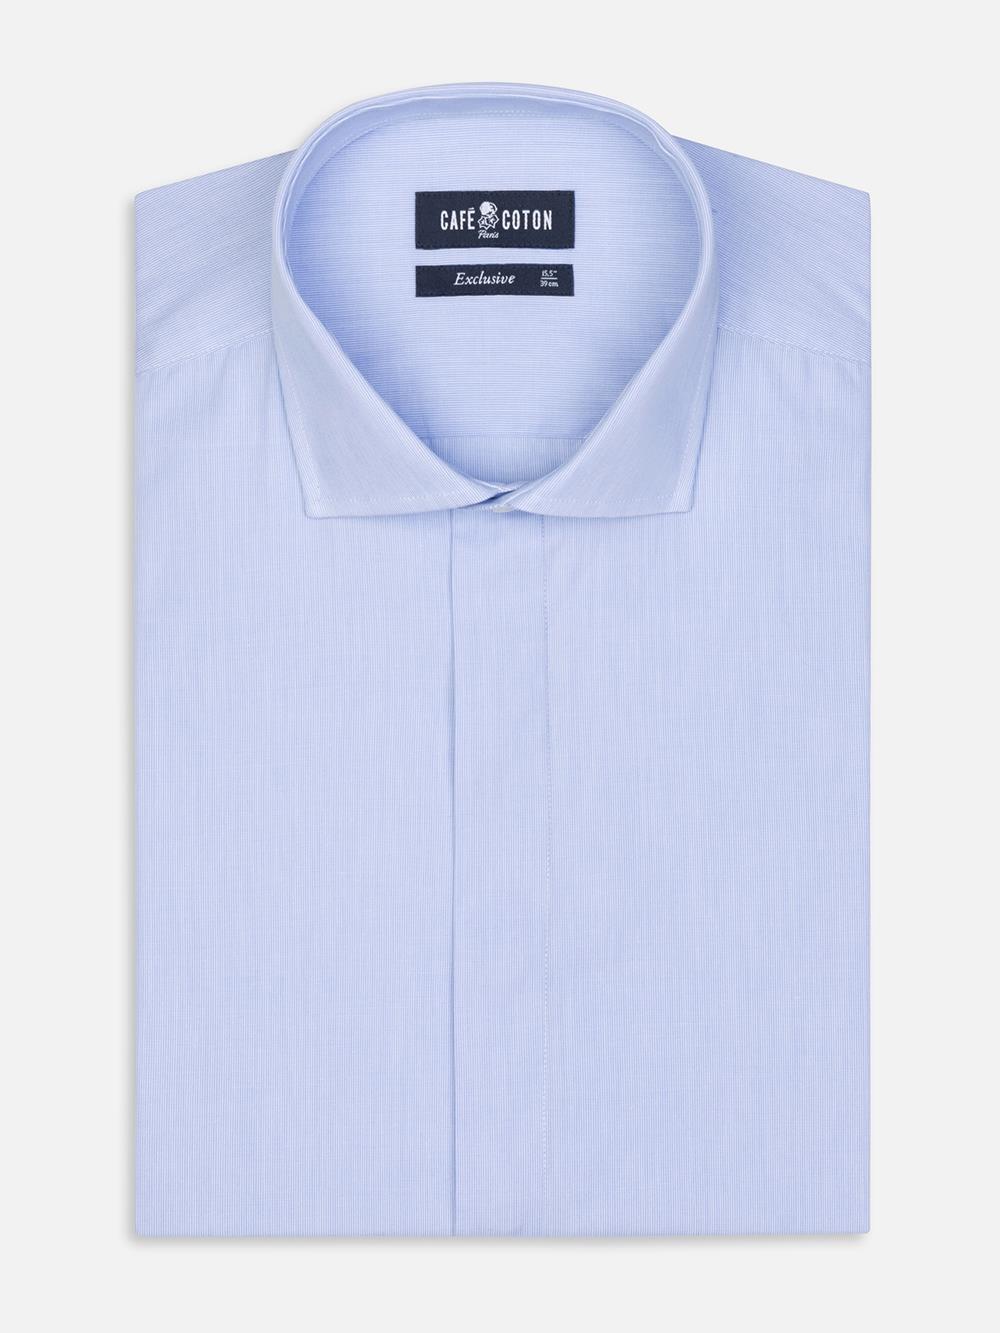 Tailliertes Hemd mit tausend Streifen himmelblau - Verdeckte Knopfleiste